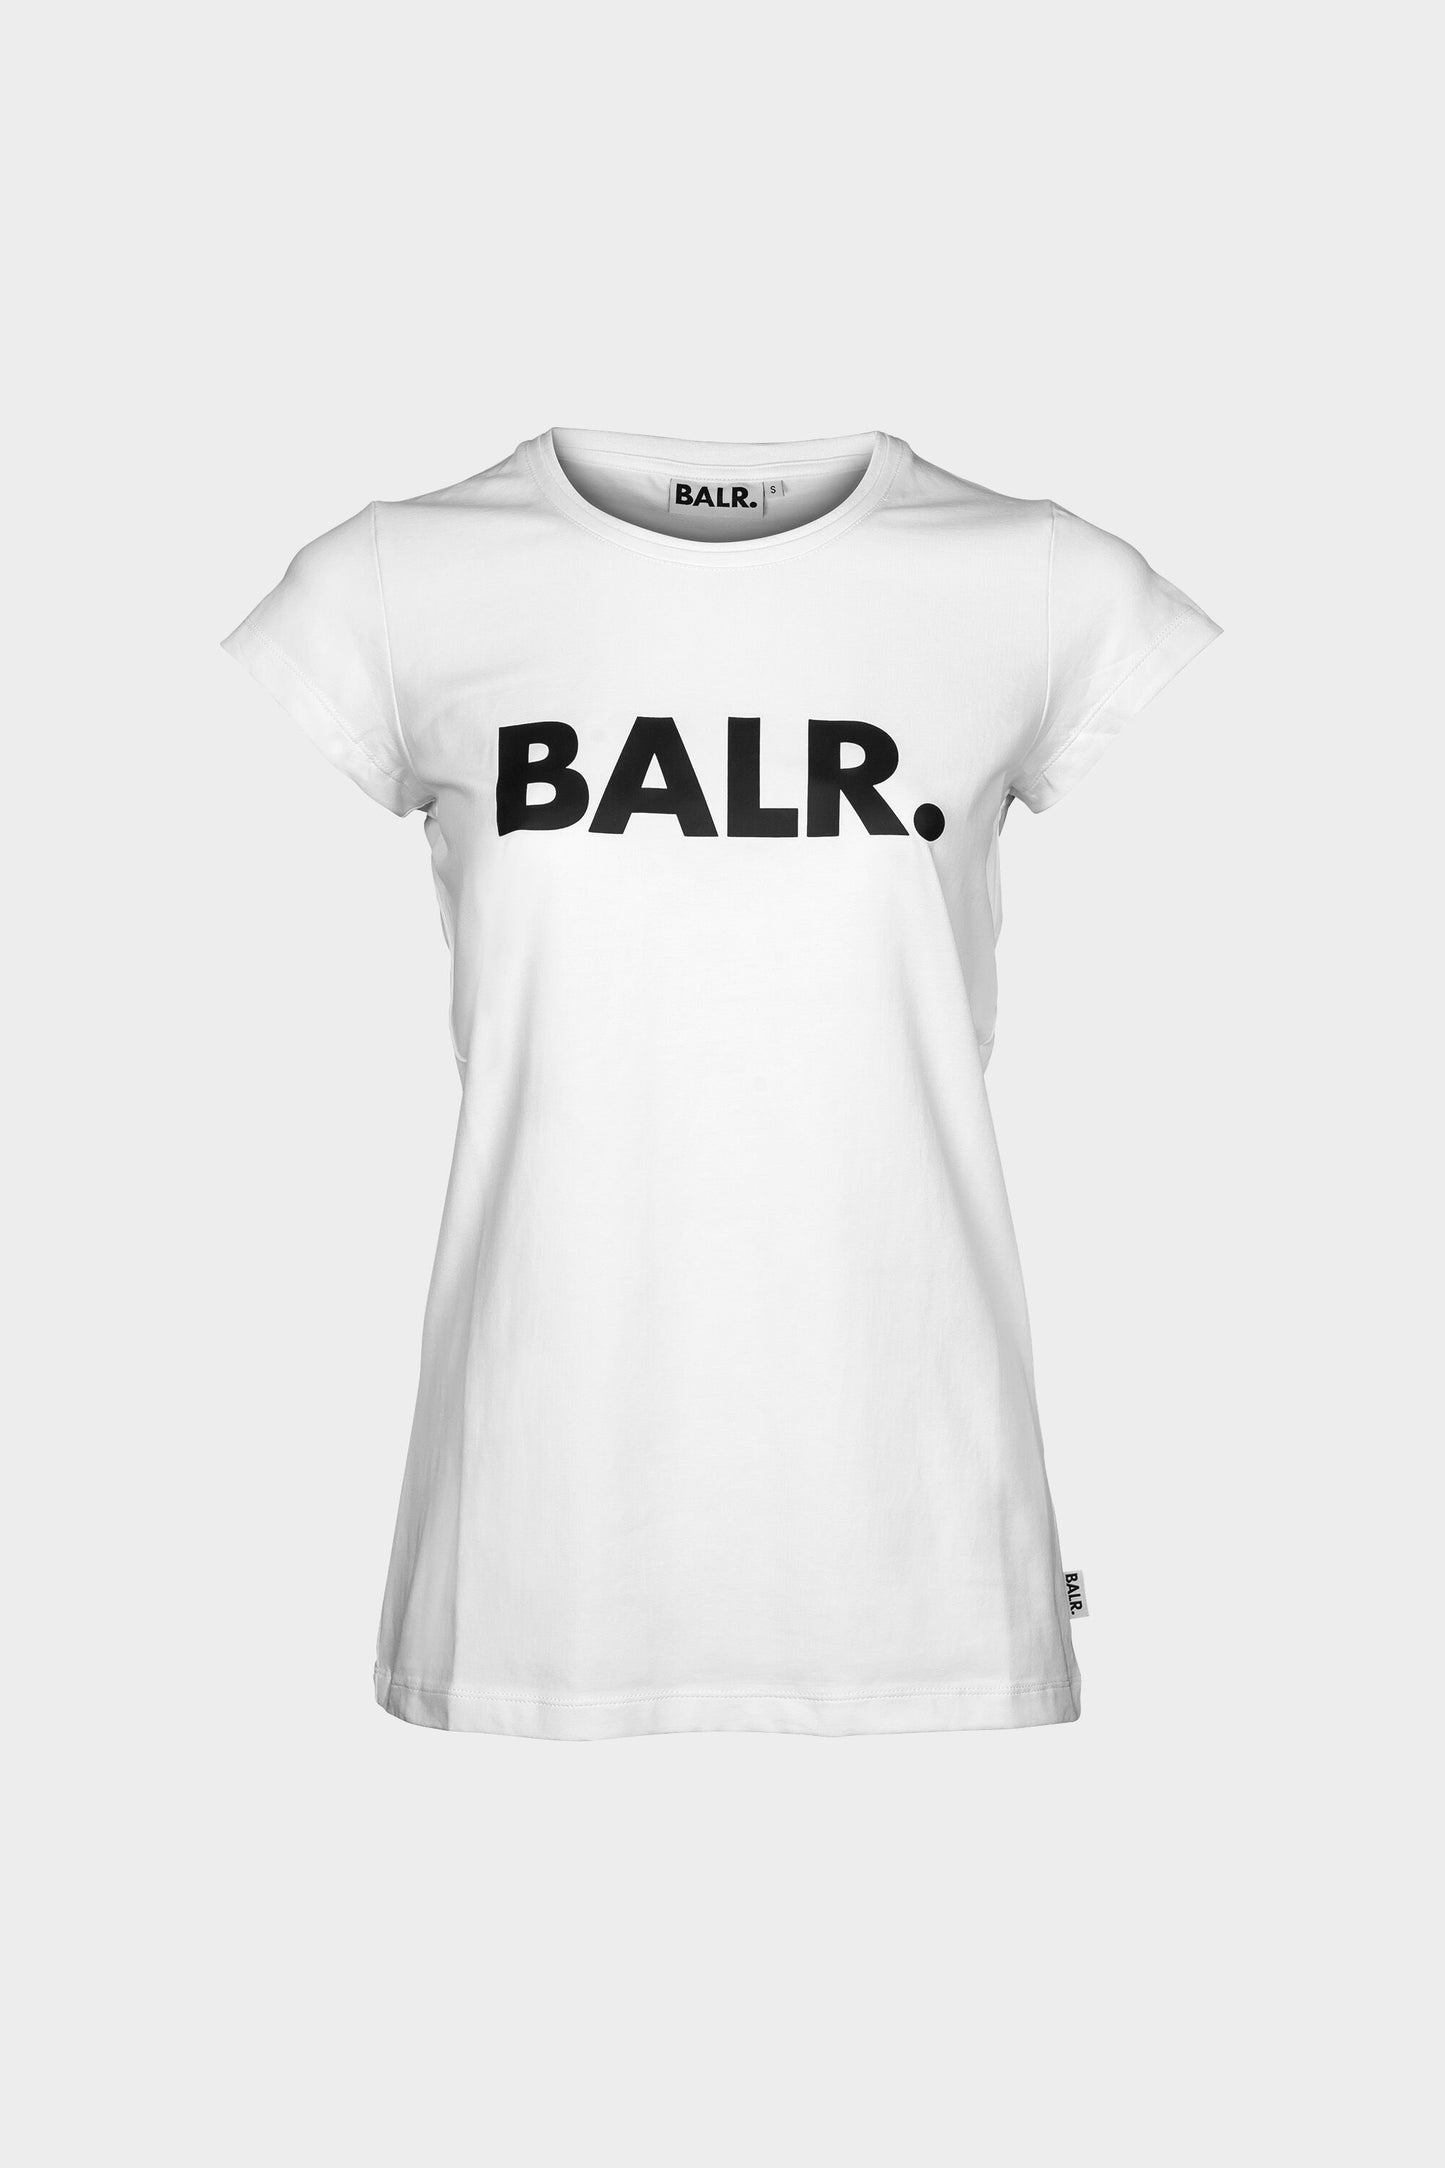 Verbeelding Winkelier Kalmte Dames Merk T-shirt Wit - BALR.